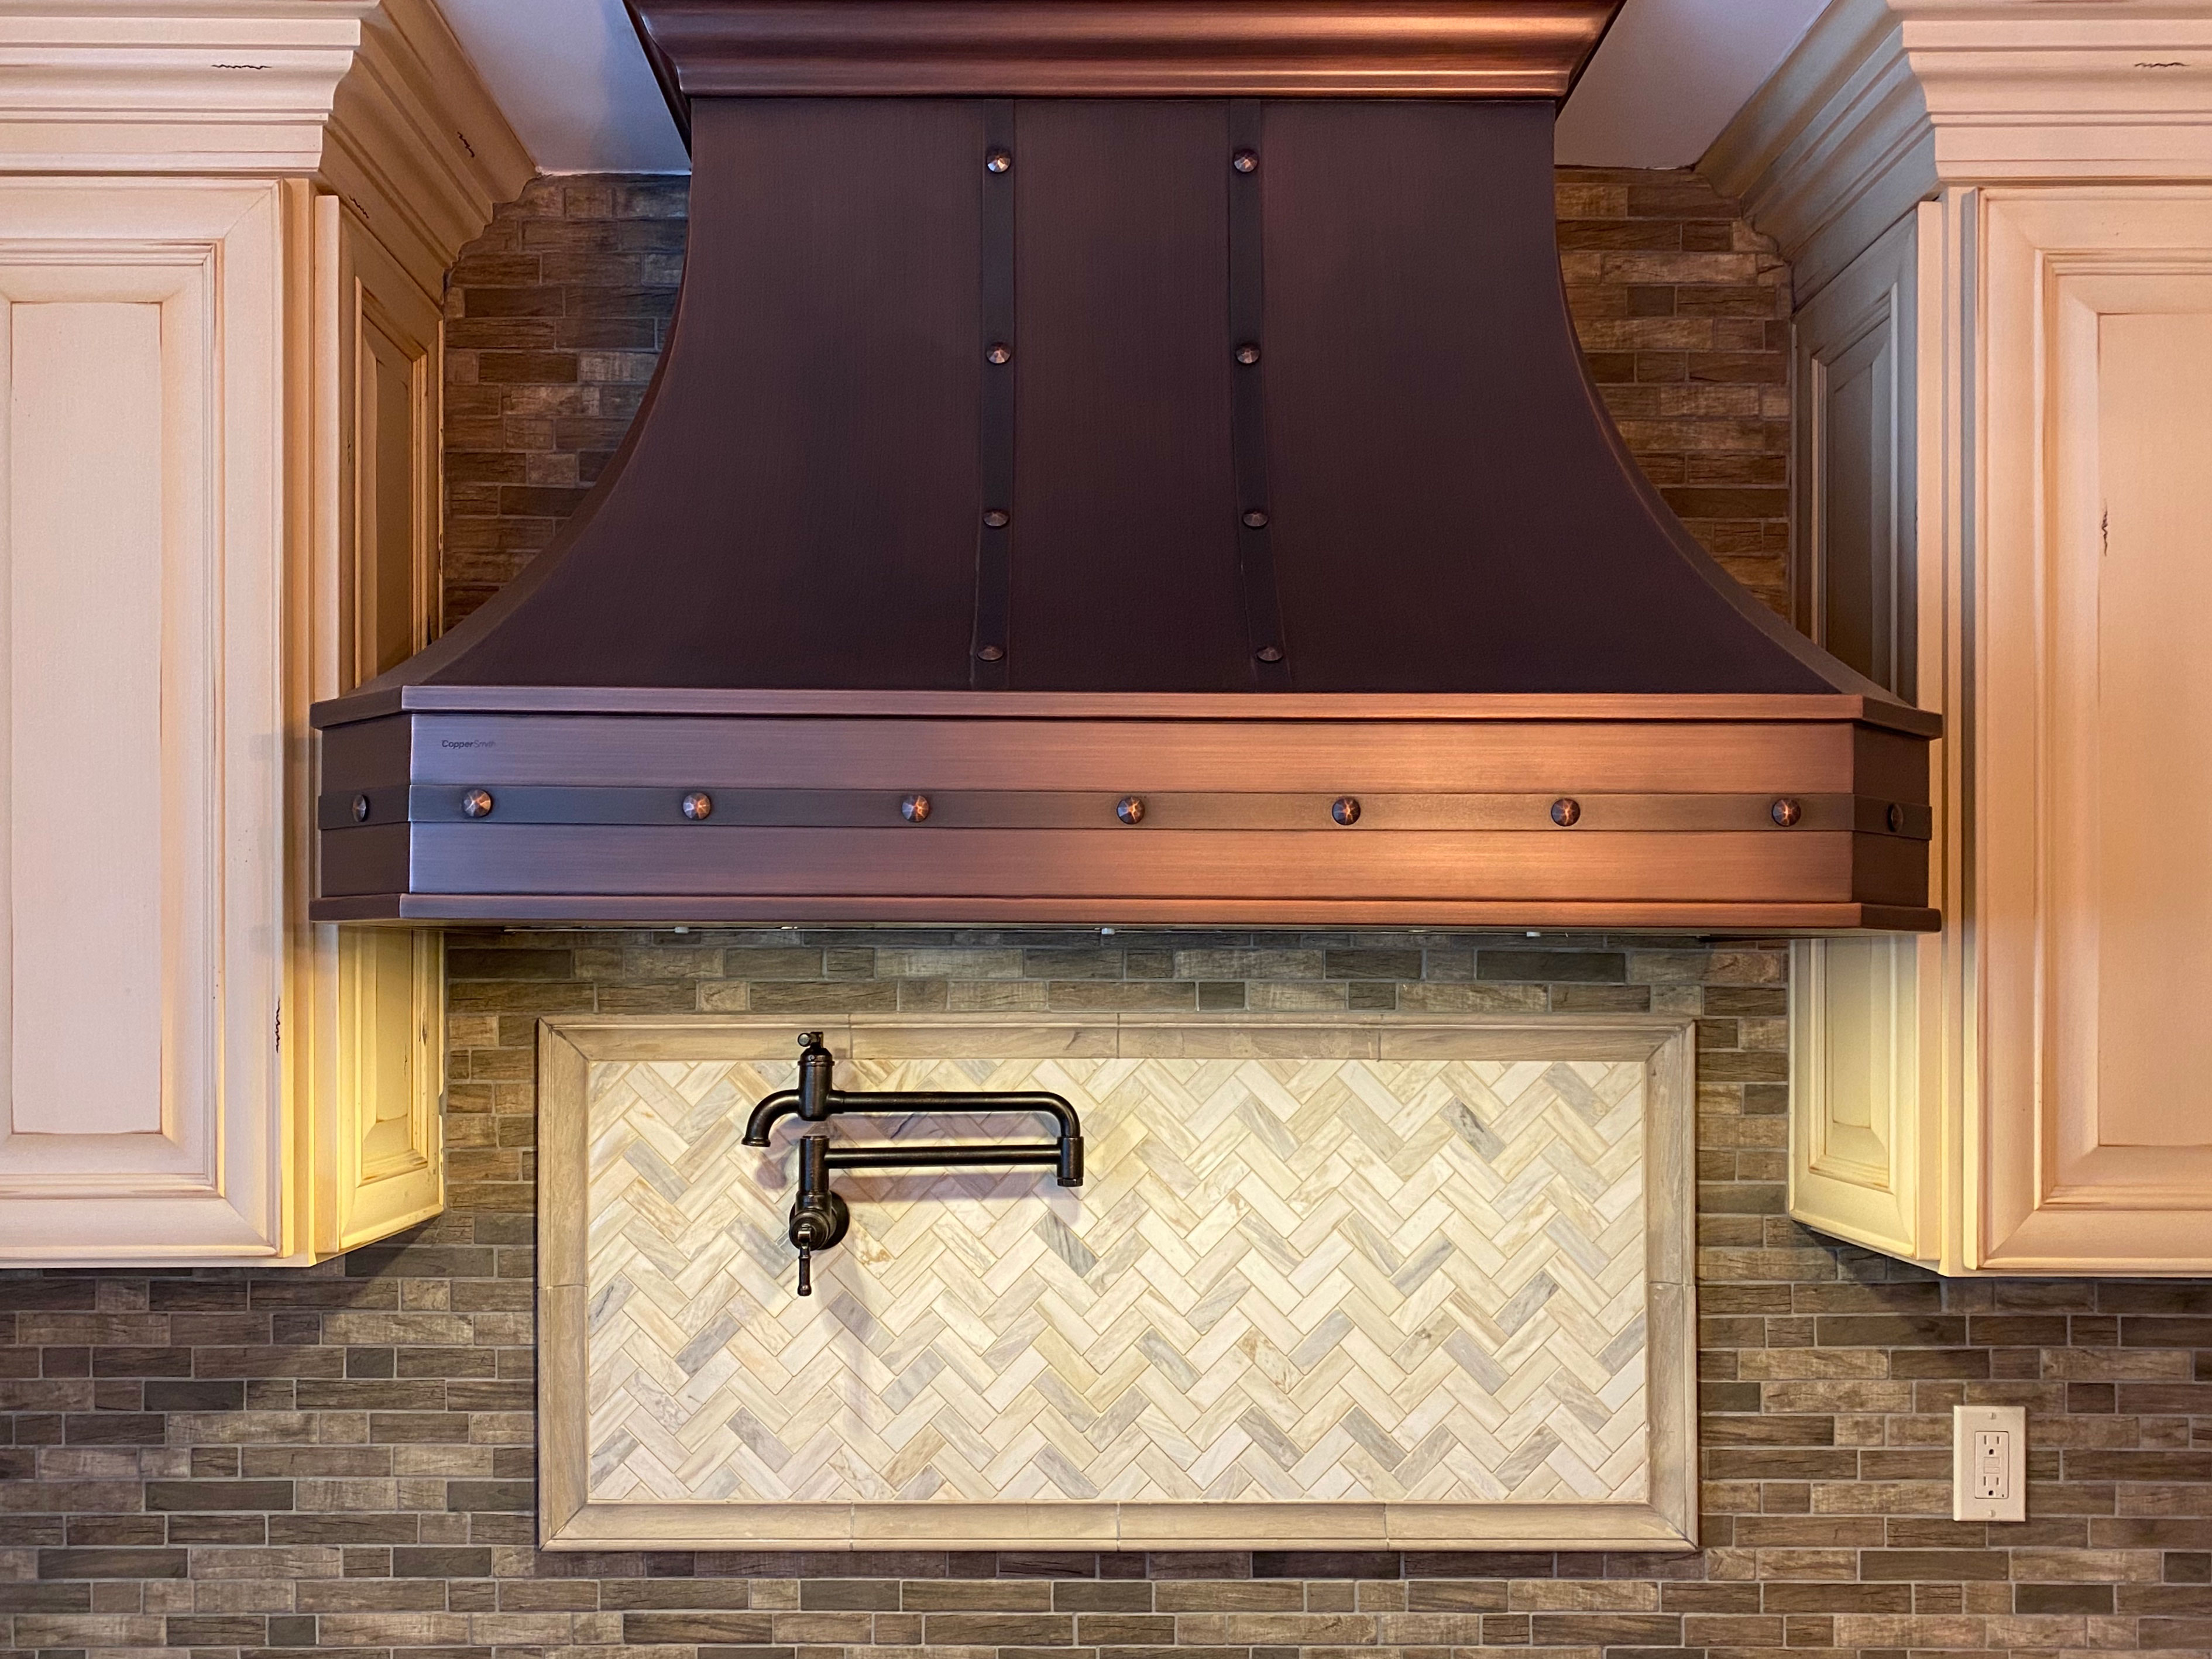 Amazing french kitchen design, featuring white cabinets captivating brick backsplash, while exploring range hood